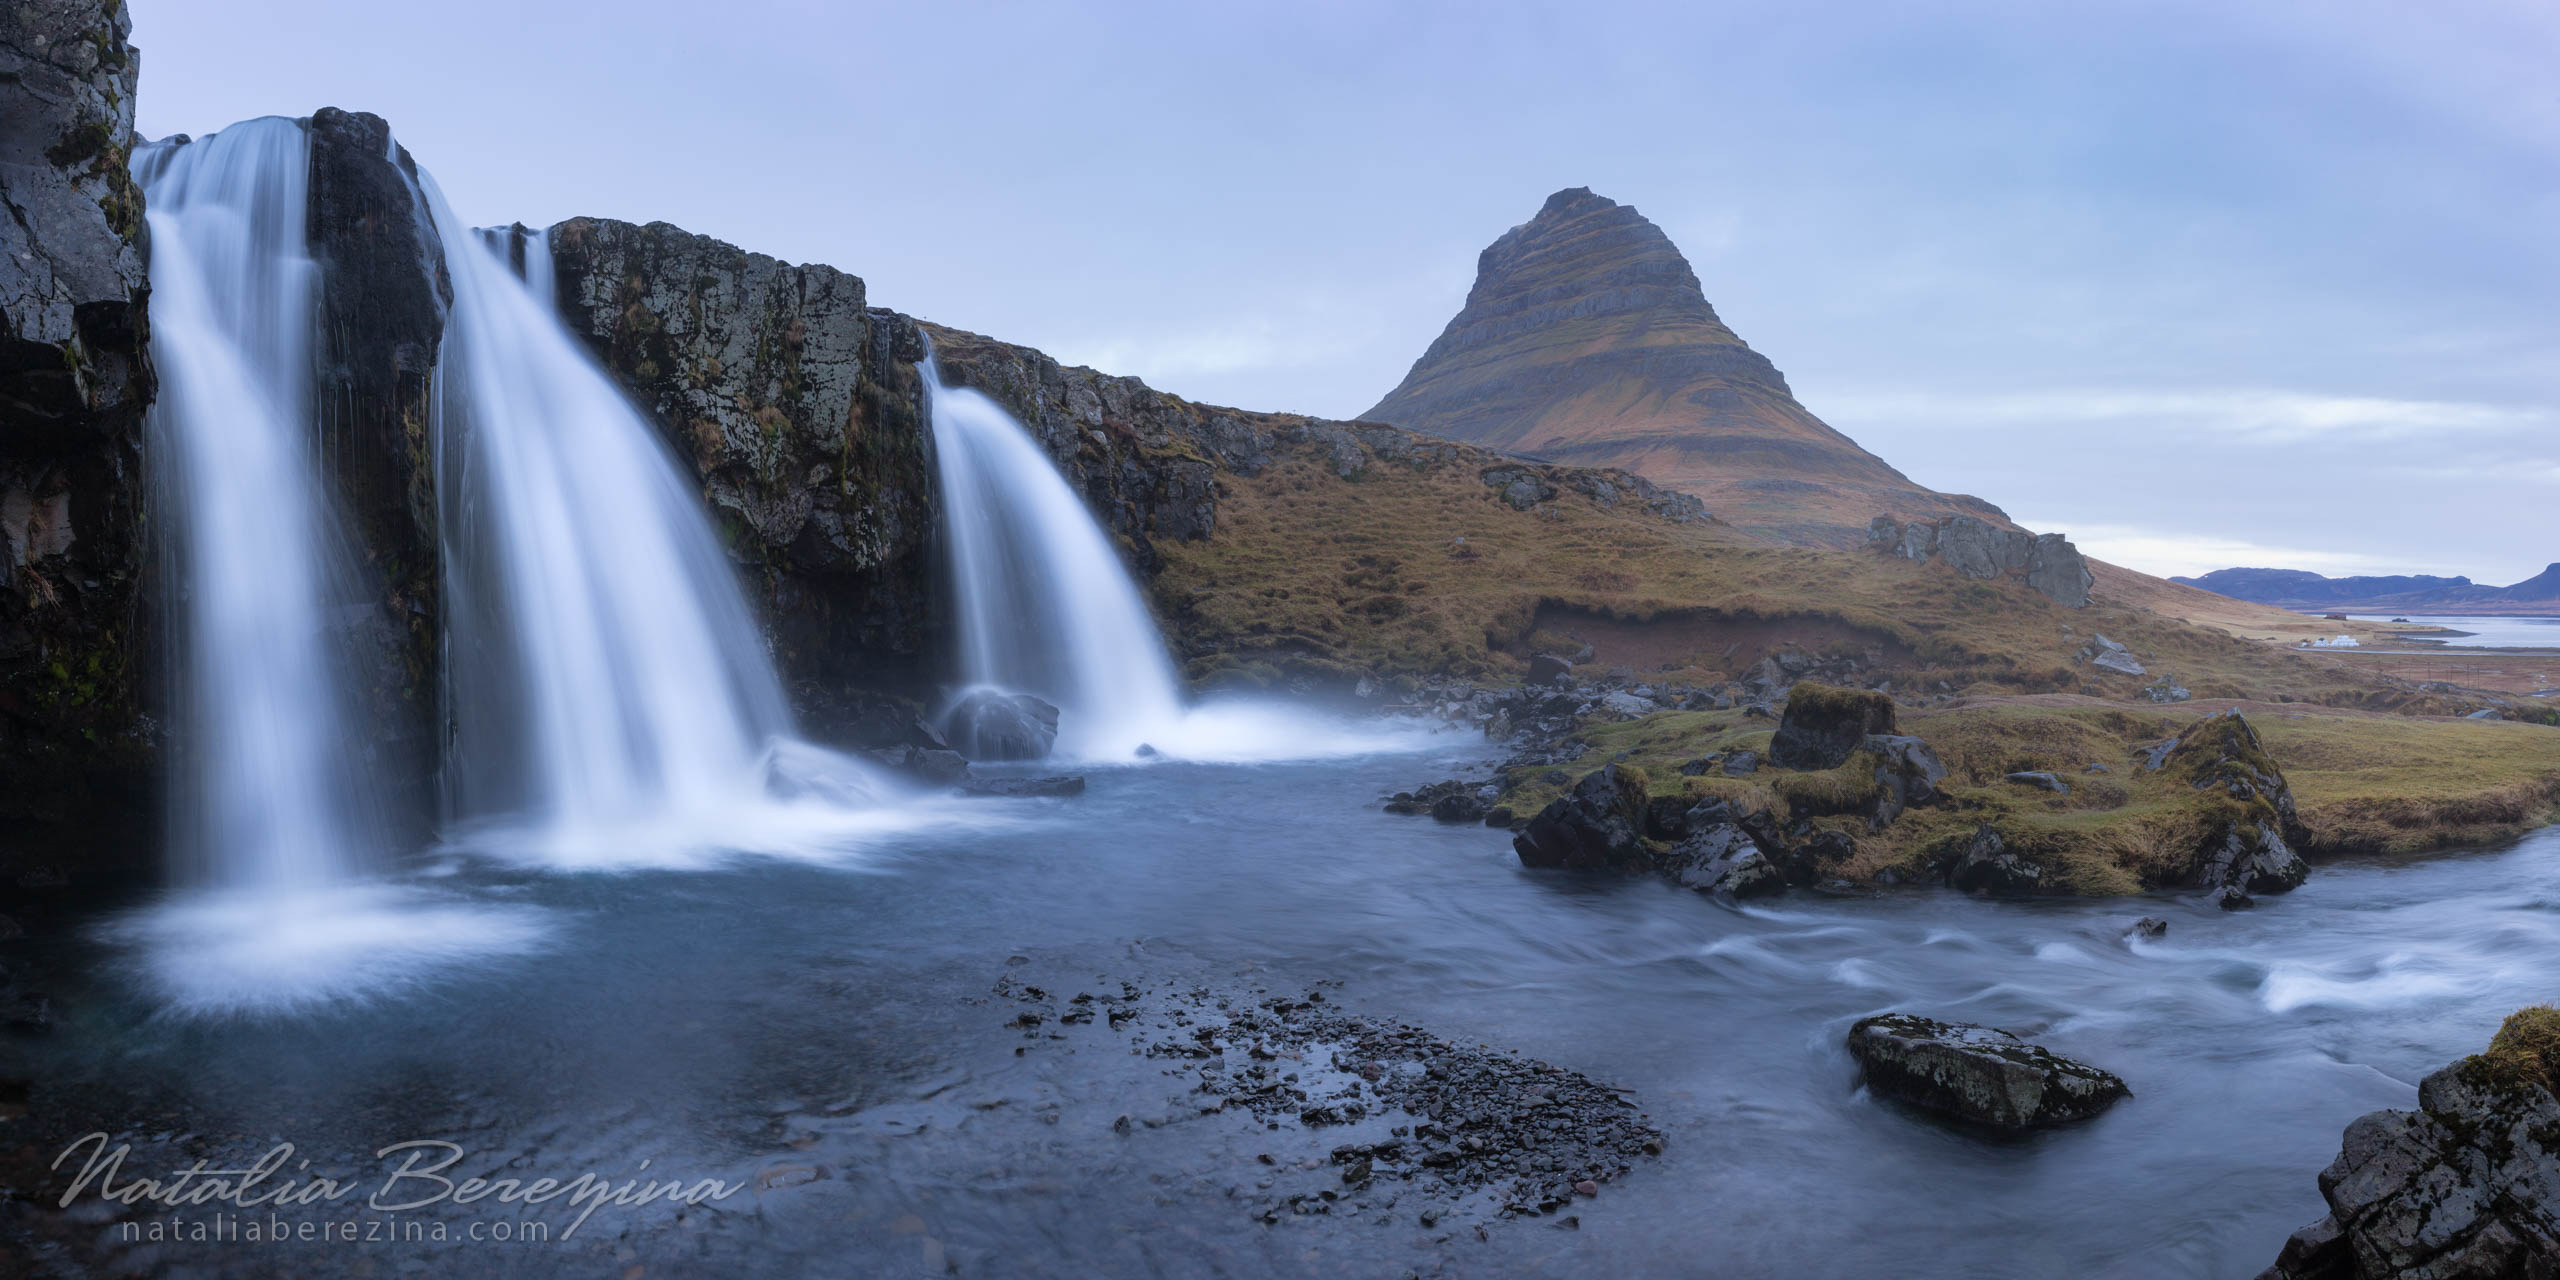 Iceland, landscape, waterfall, mountains, 2x1 IC1-NBDK1U2076-P - Iceland - Natalia Berezina Photography